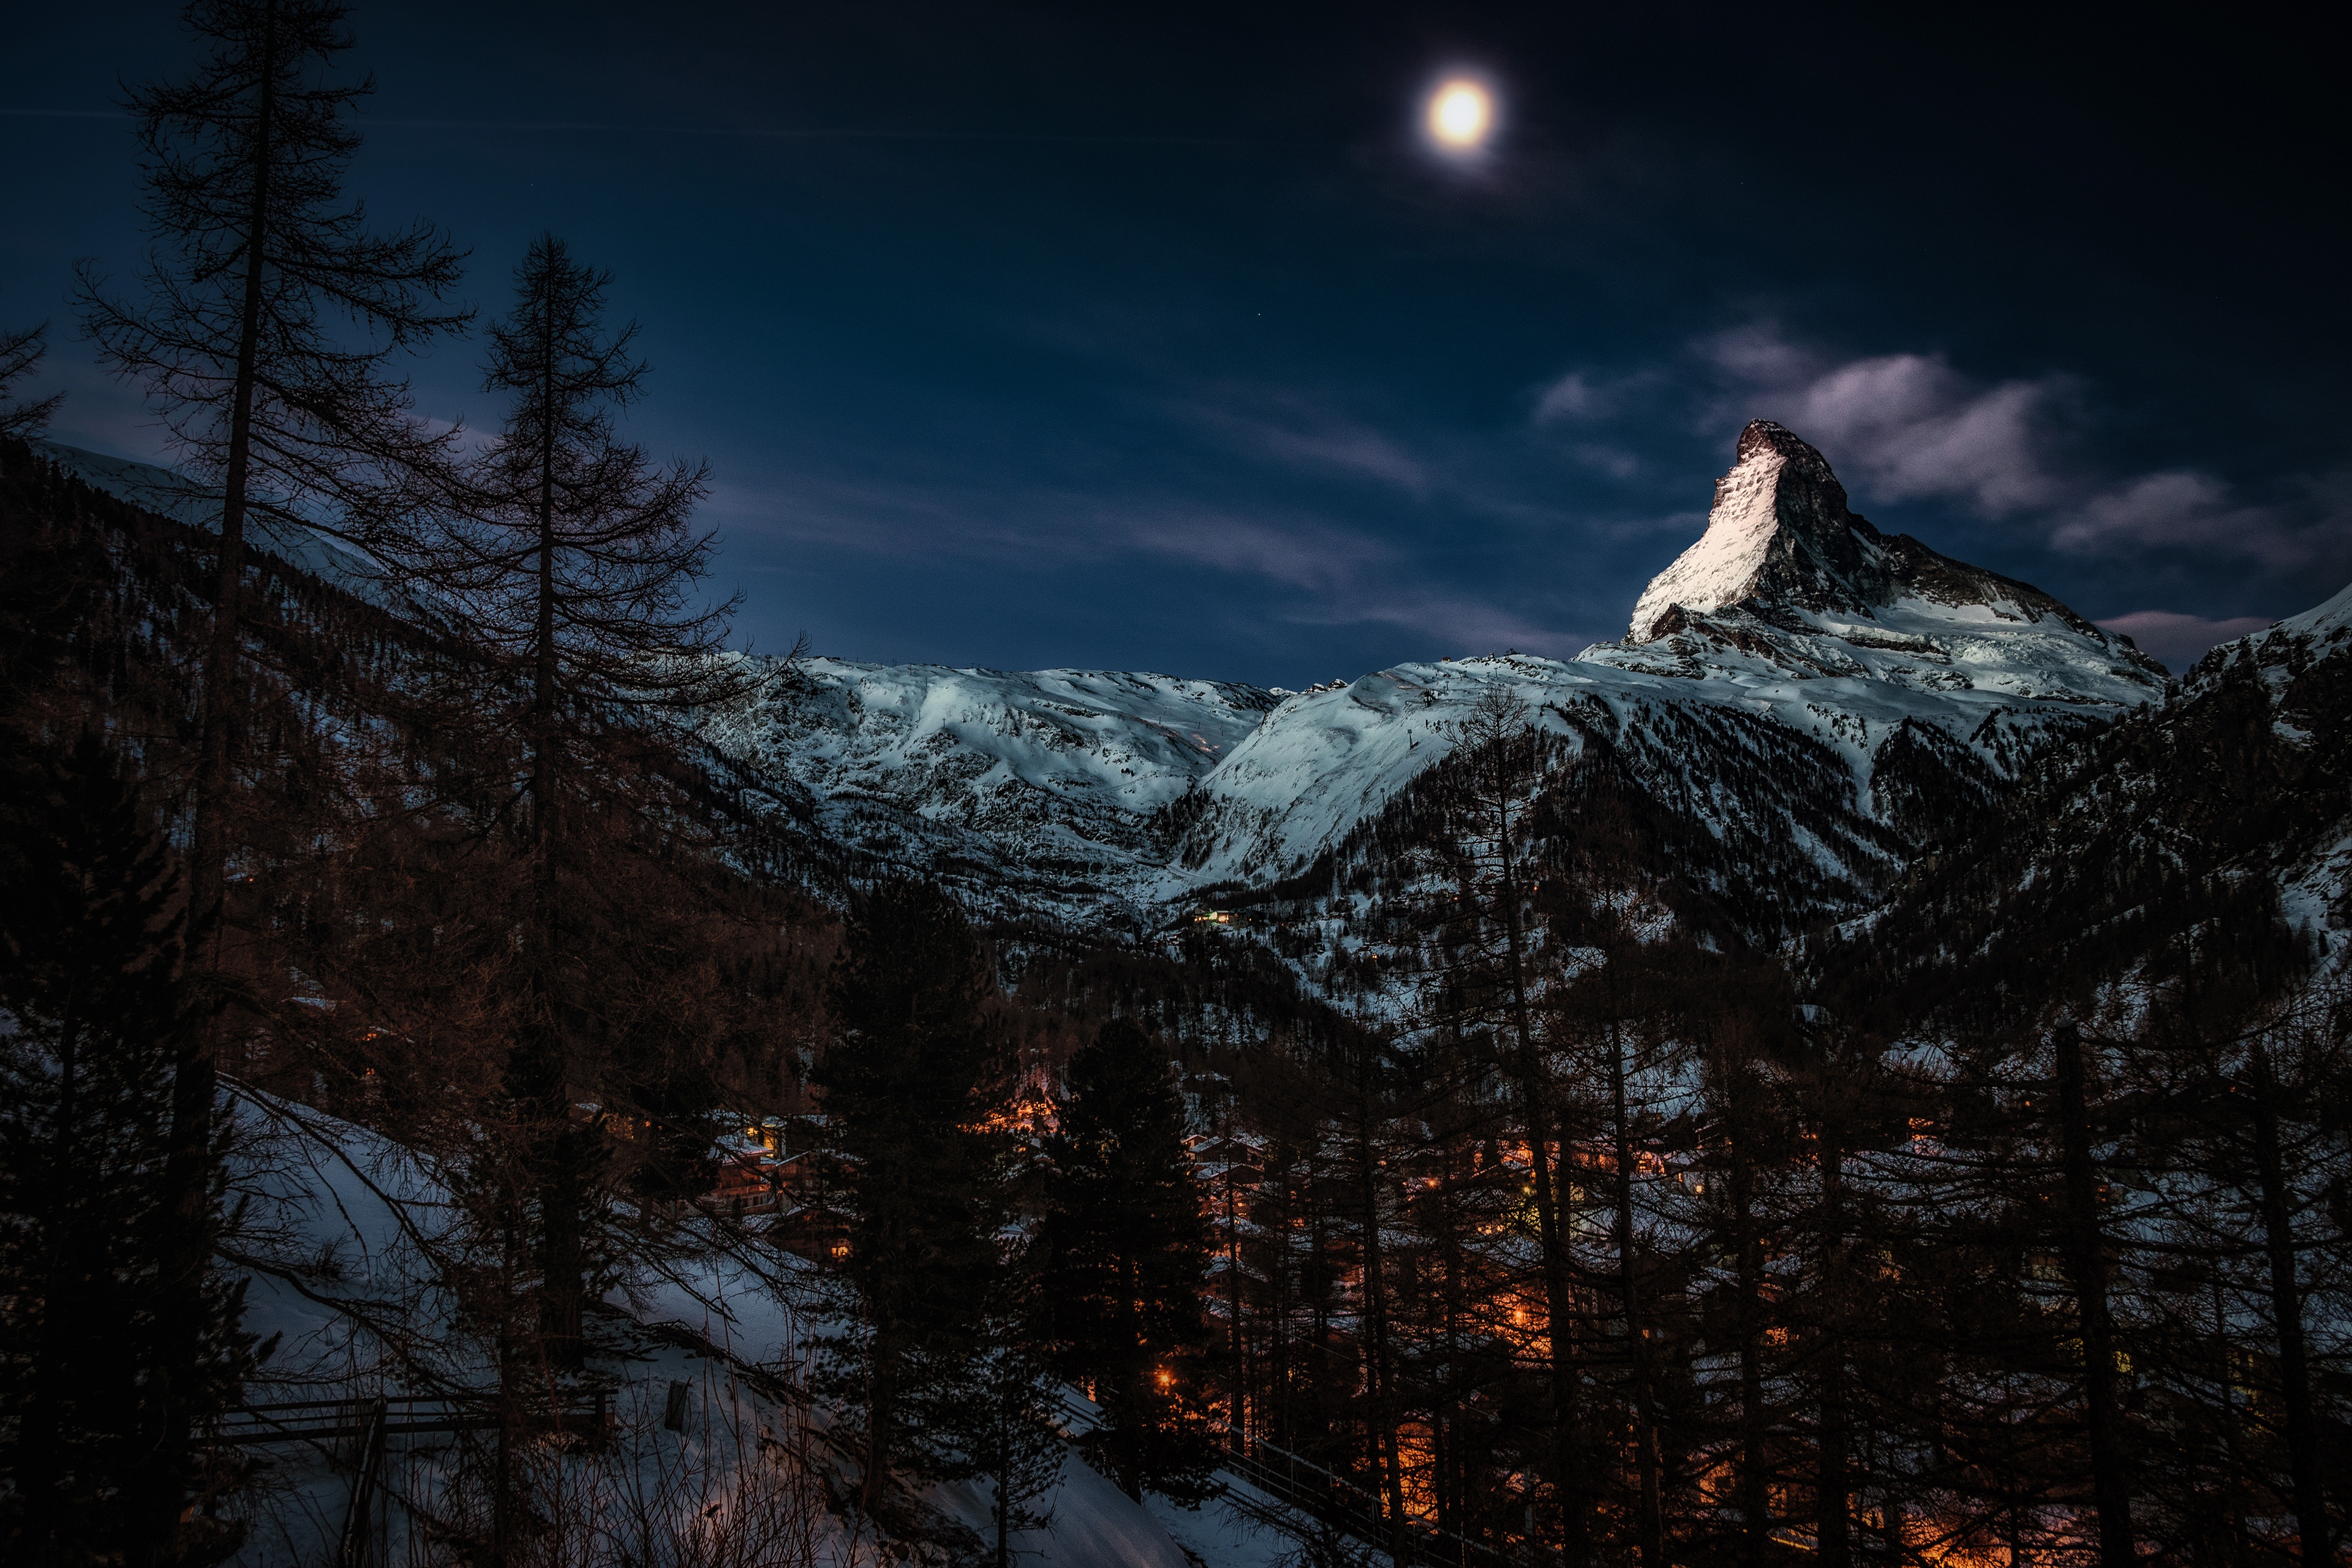 Скачать обои бесплатно Зима, Ночь, Луна, Гора, Лес, Фотографии картинка на рабочий стол ПК